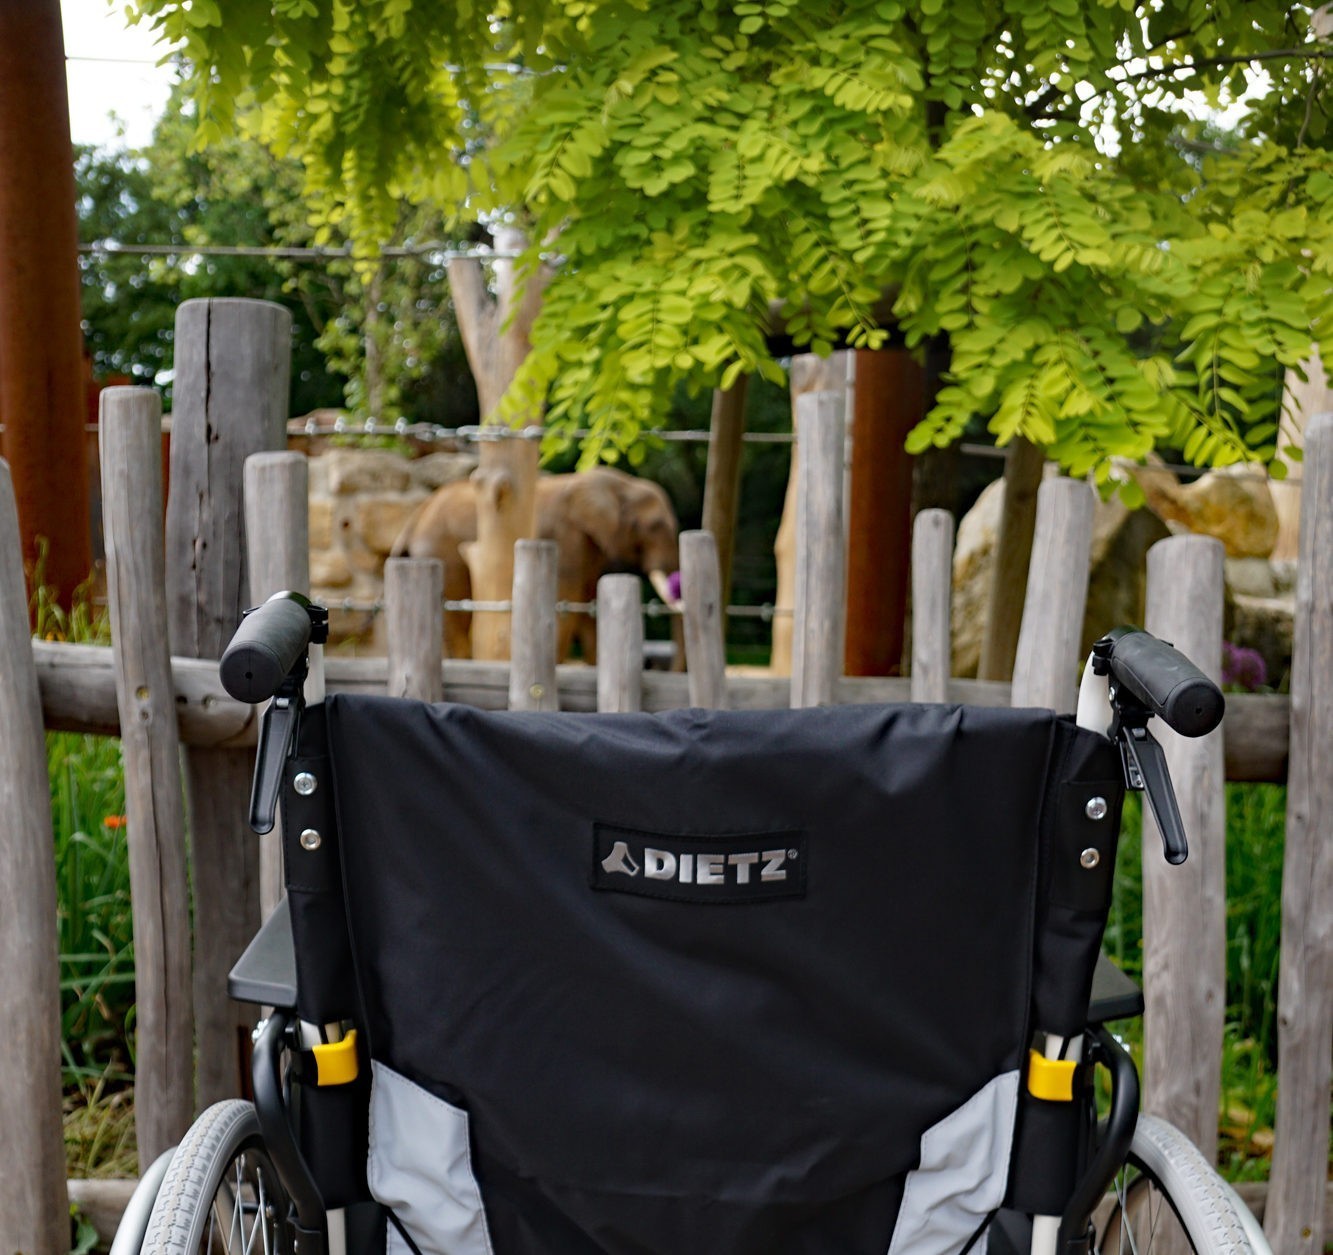 Wheelchair outside elephant enclosure.